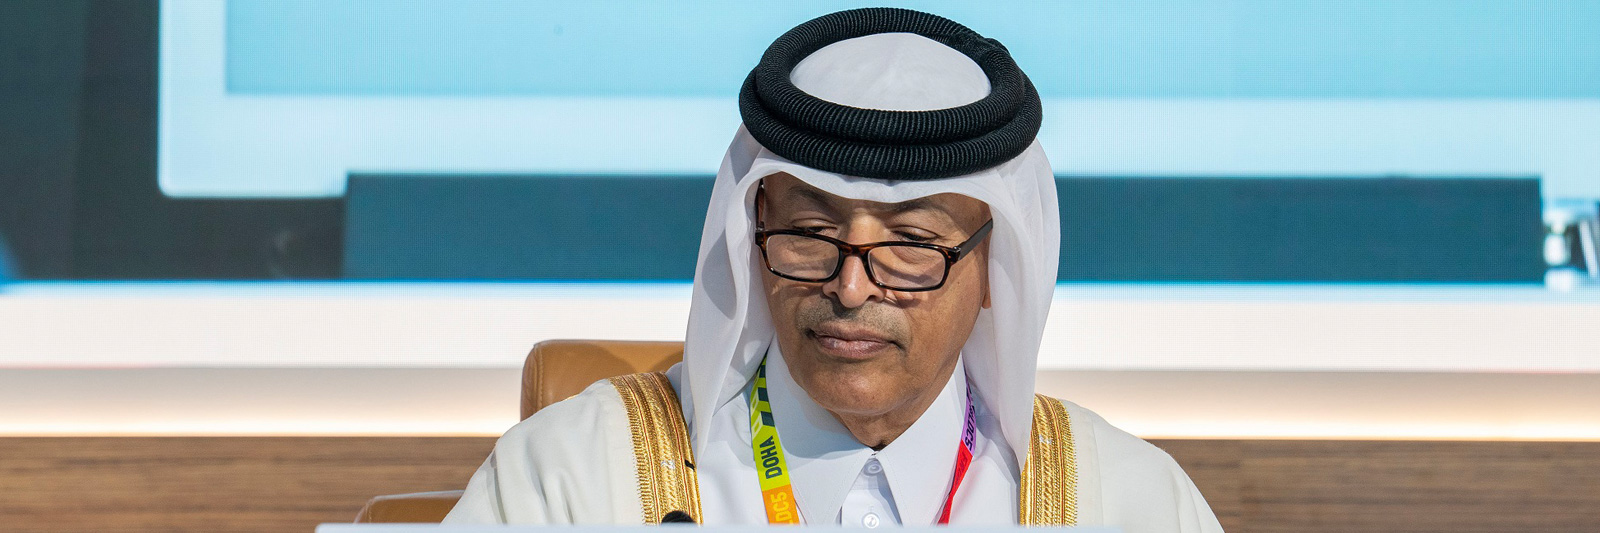 رئيس مجلس الشورى يؤكد على دور قطر في دعم البلدان الأقل نموا